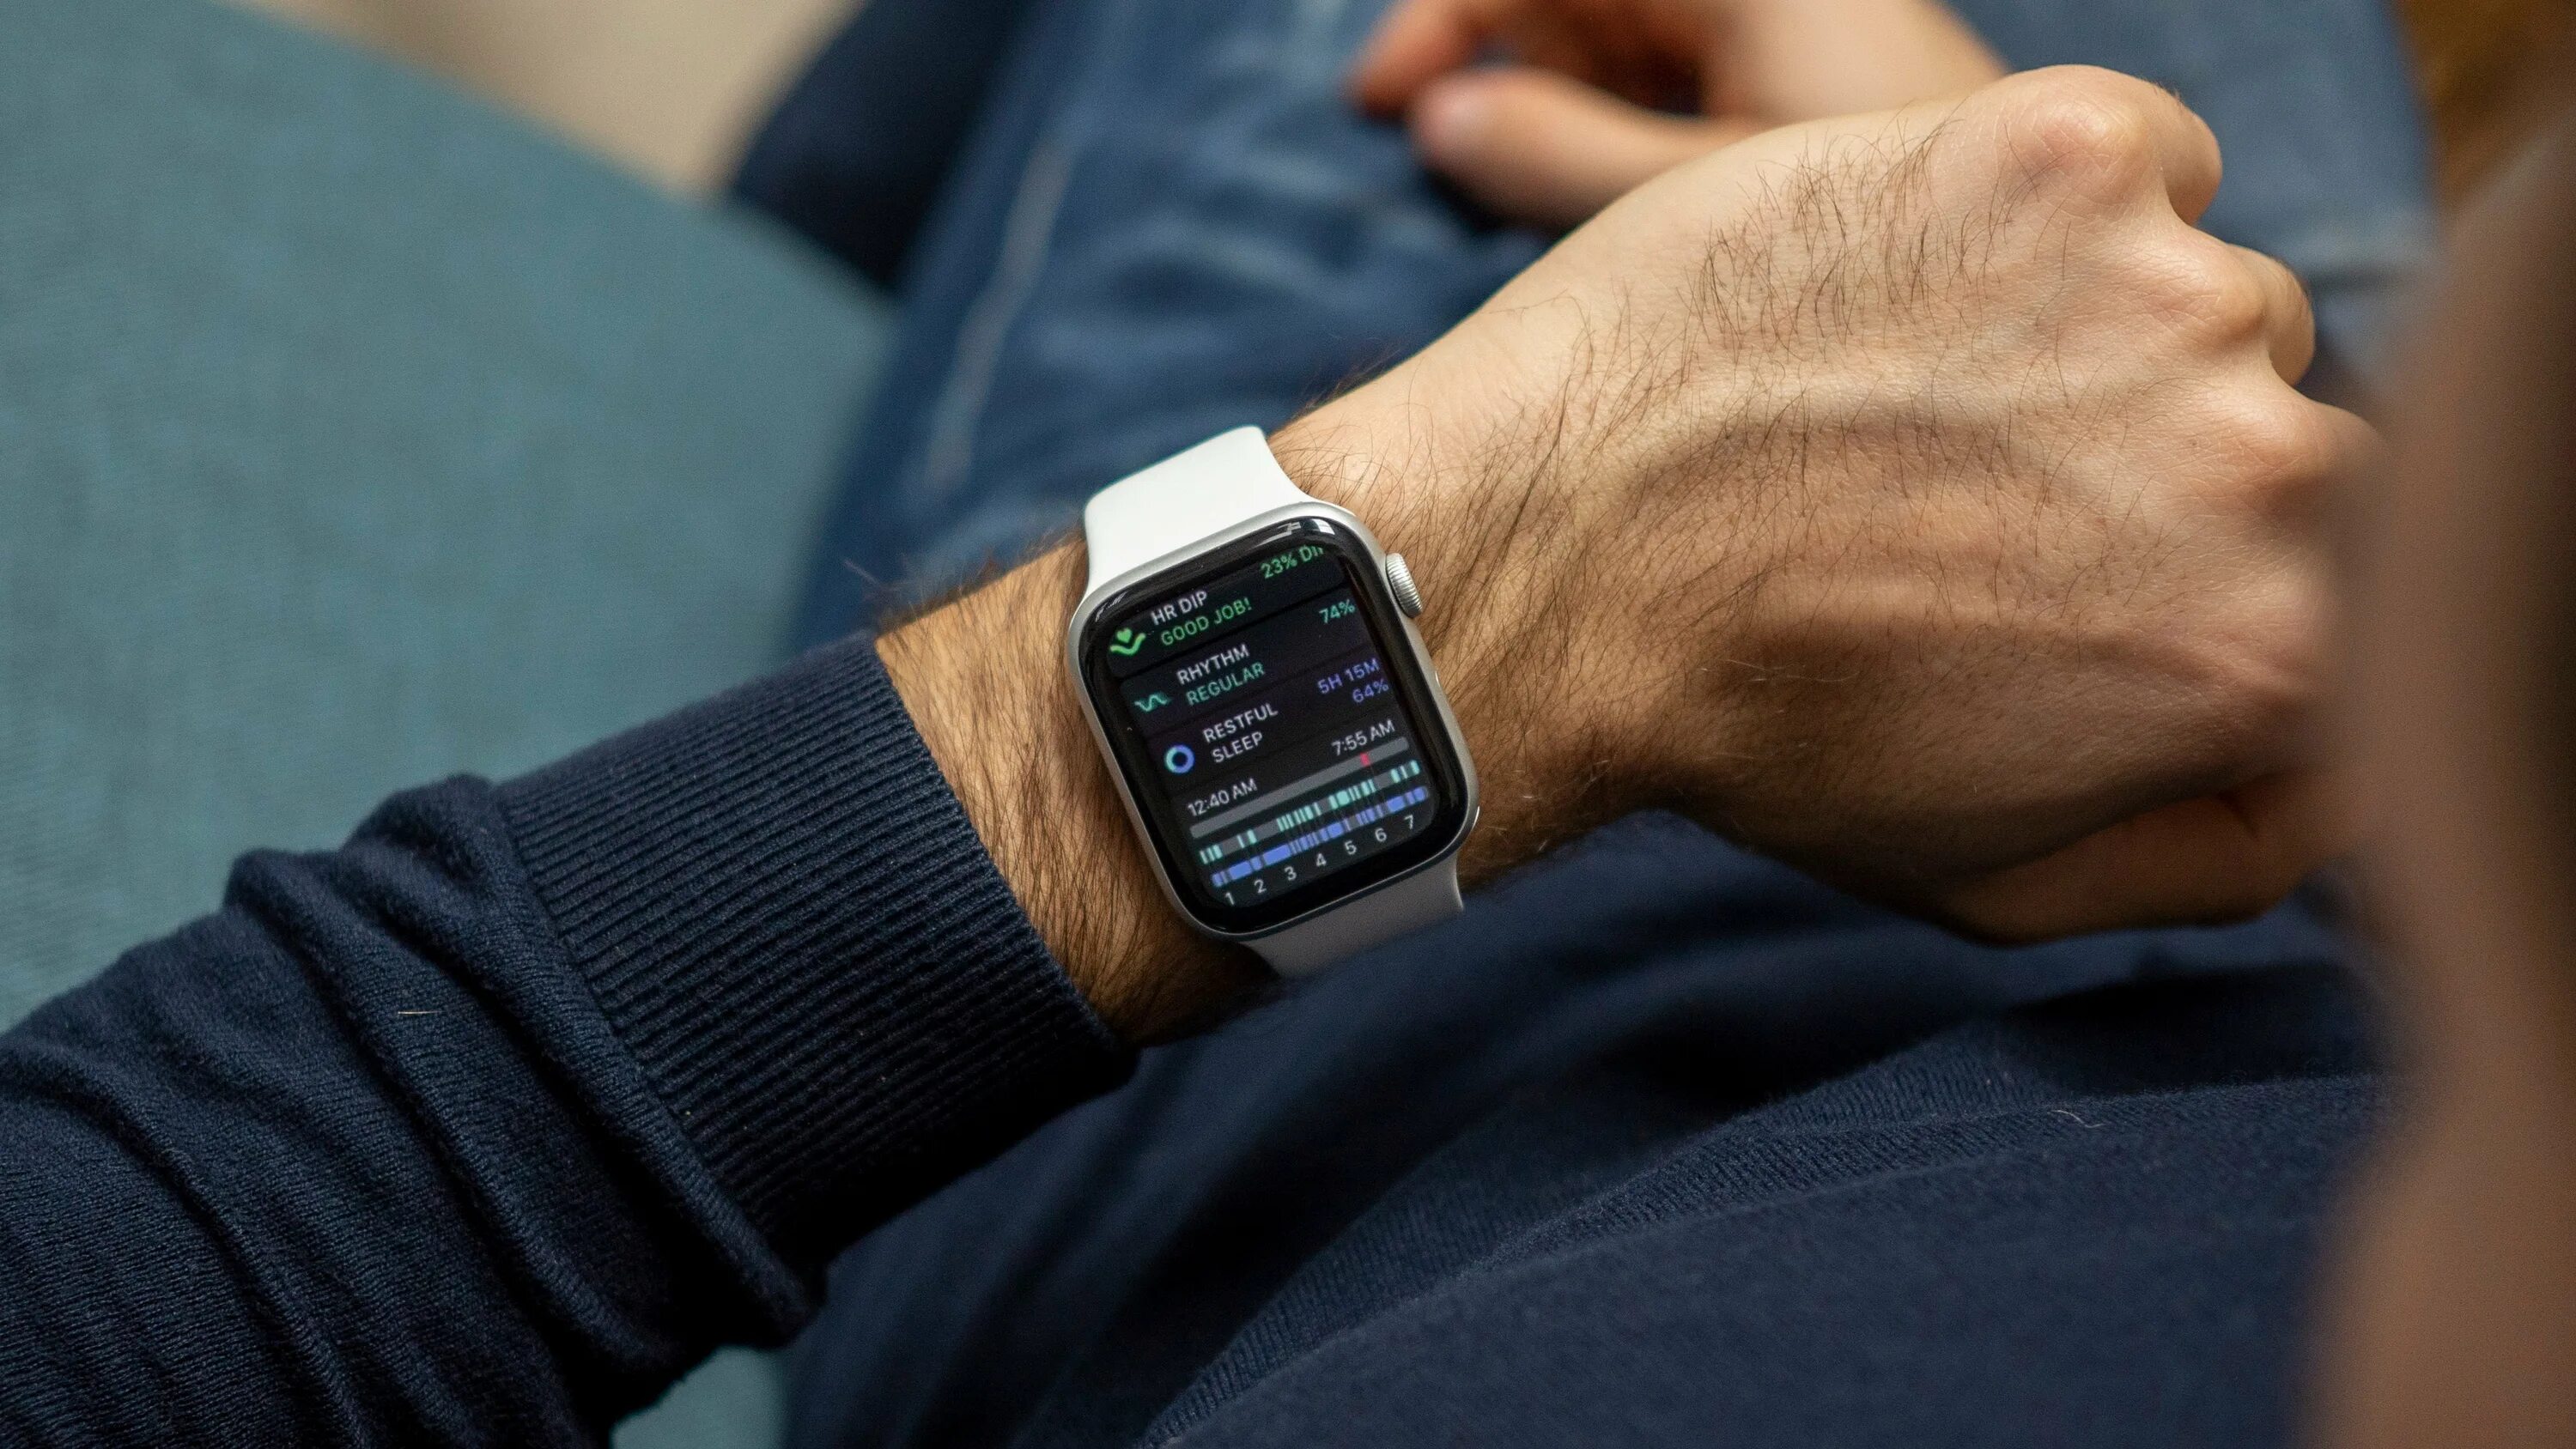 Apple series 6 44. Смарт часы эпл вотч 6. Apple watch 6 44 mm. Apple watch se 40mm. Apple watch Series 6 44mm.